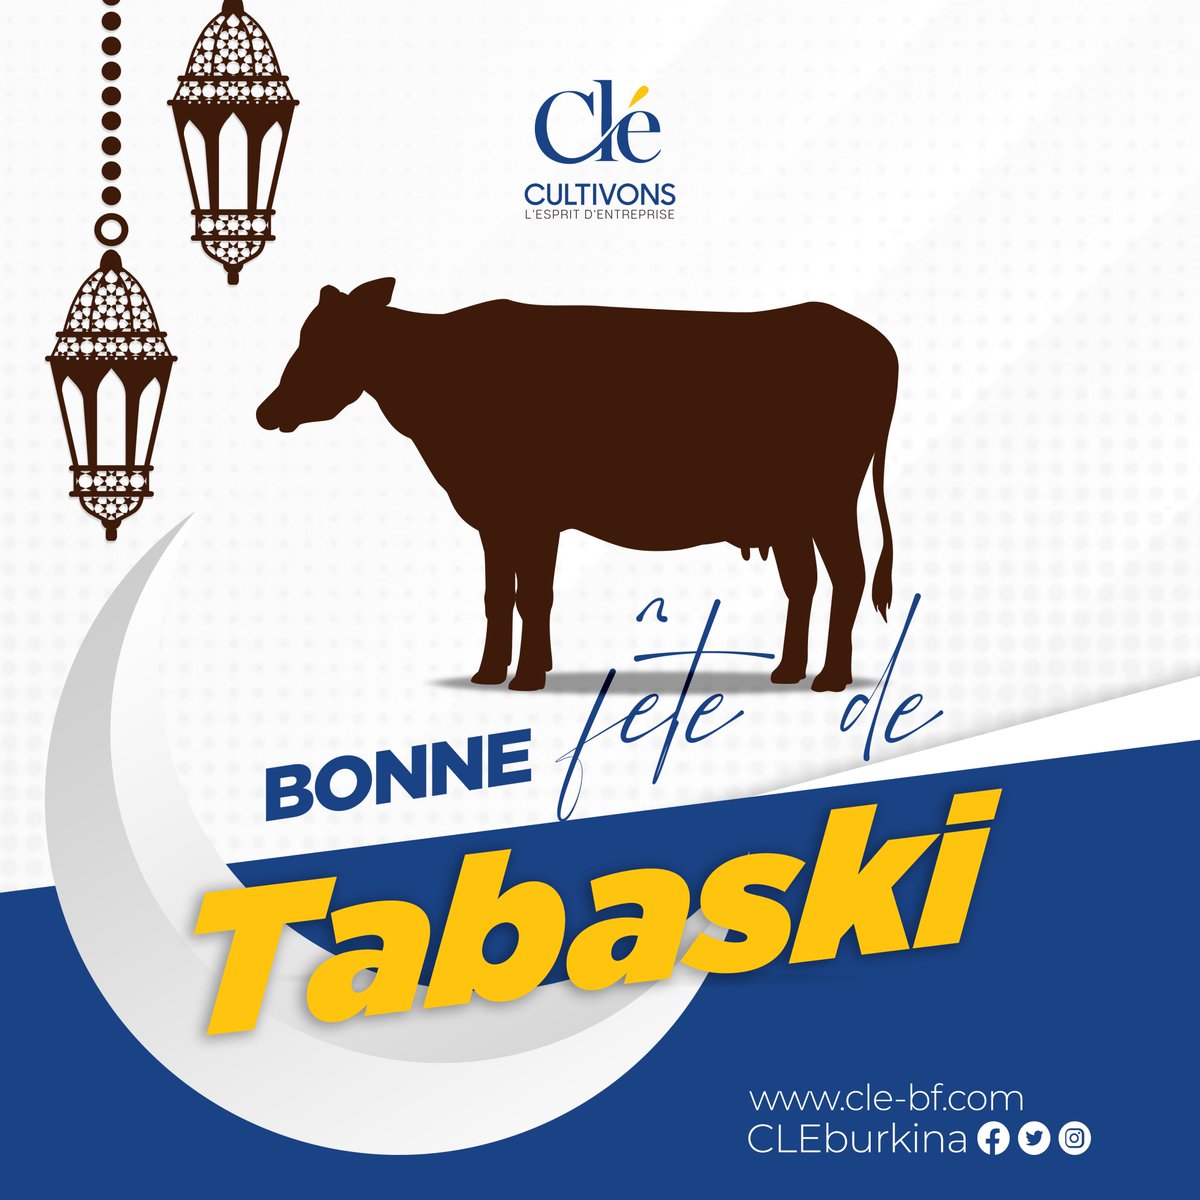 Bonne fête de Tabaski 🕌 à tous les musulmans 🧕🏽👳🏽‍♂️!  

#CLEbf #BurkinaFaso